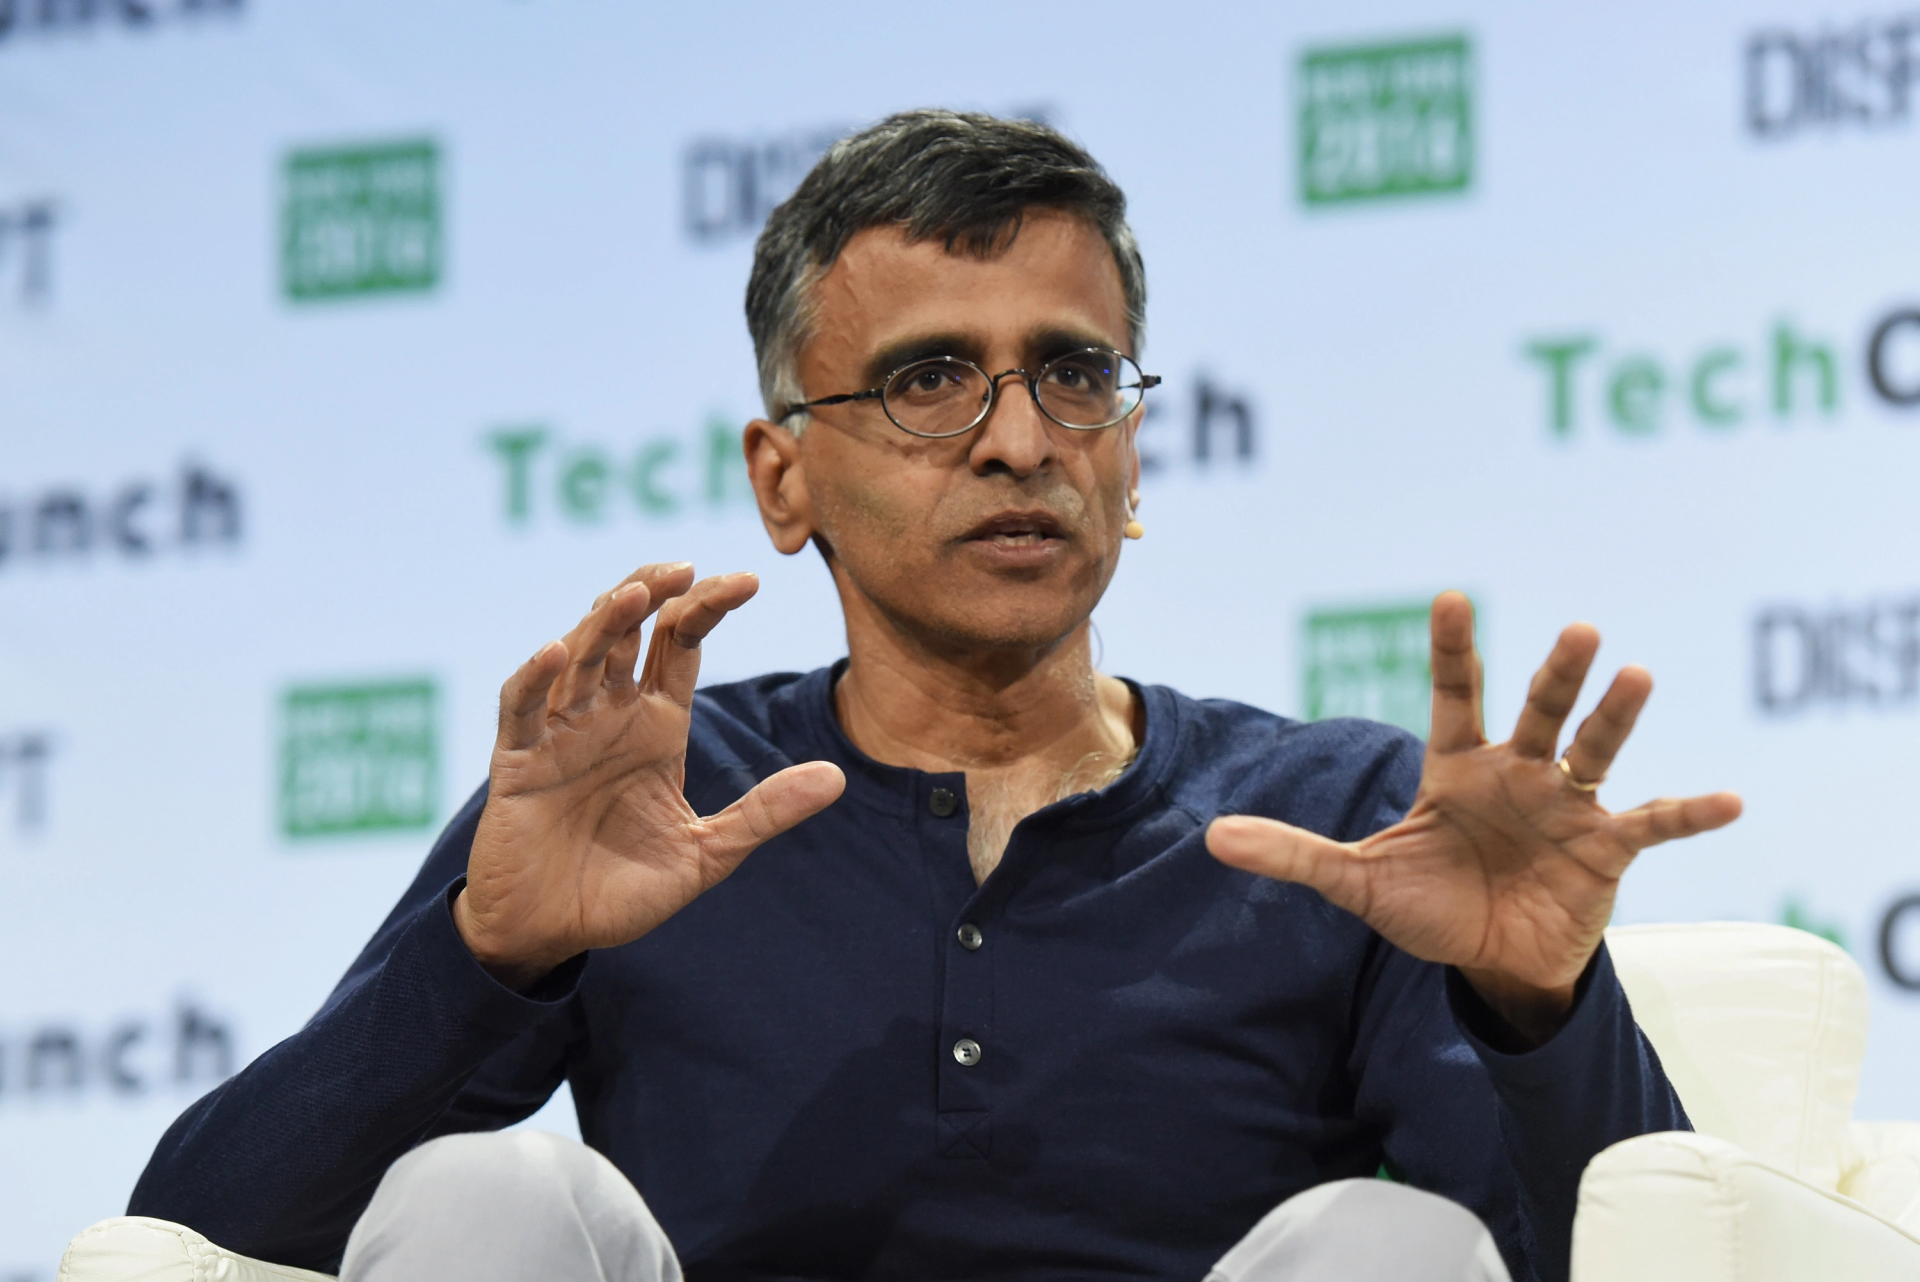 Un fost director al Google spune că societatea are nevoie de legi antitrust care vizează companiile Big Tech